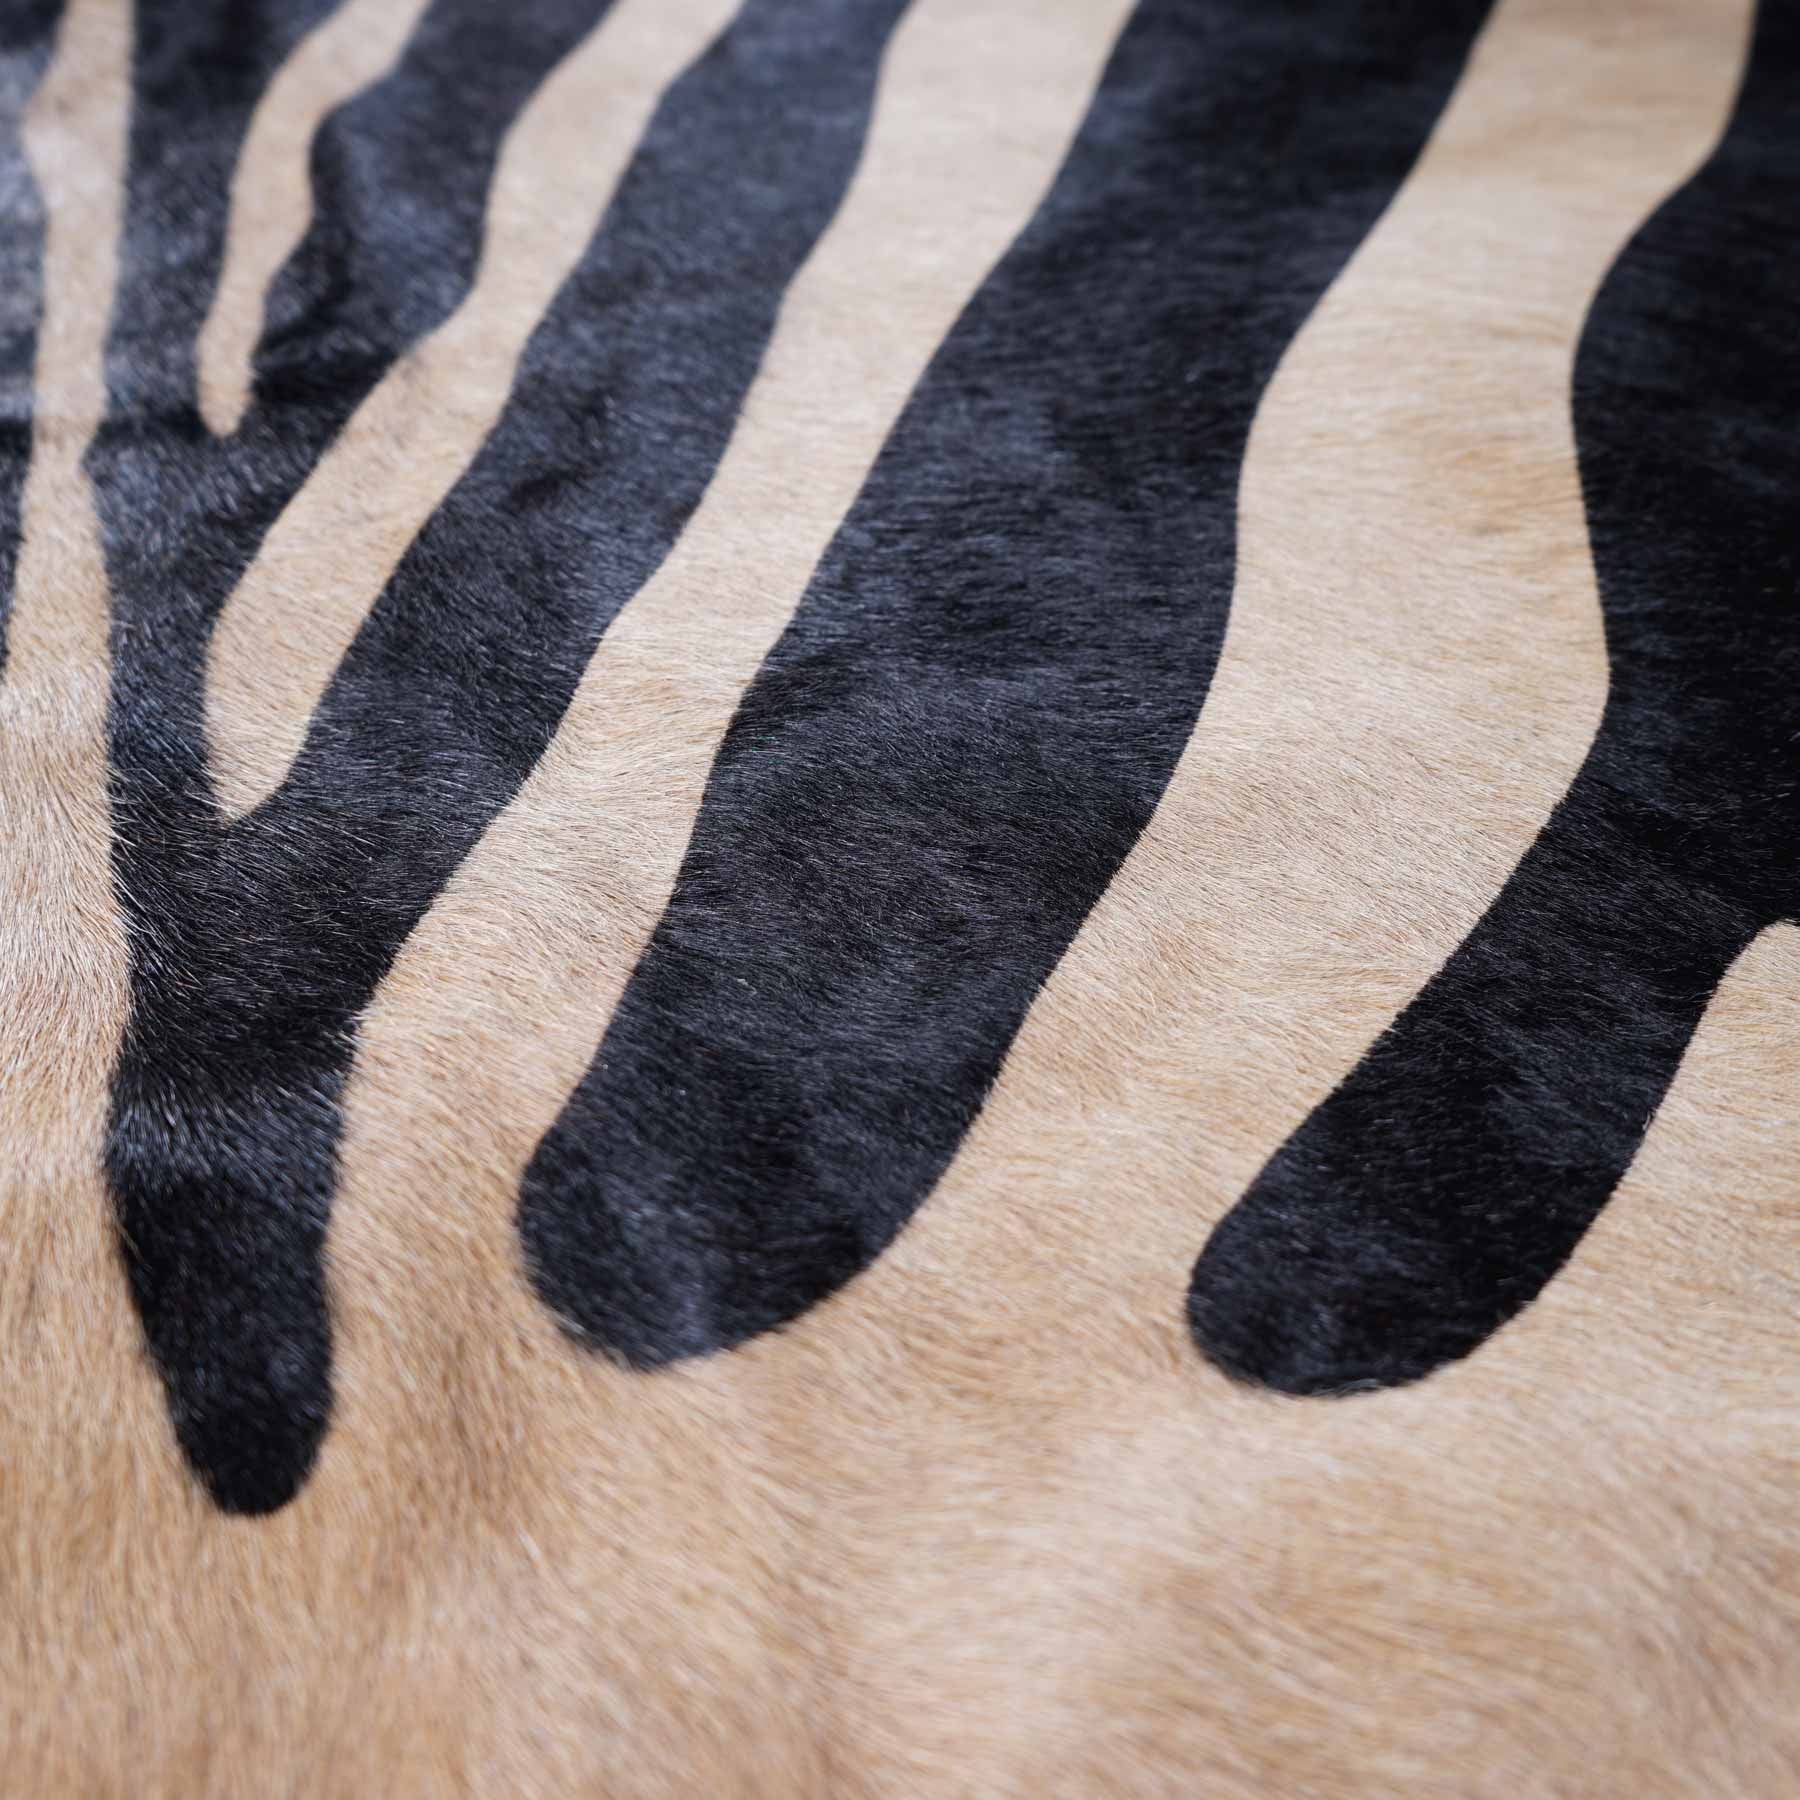 Zebra Africa Print Cowhide Rug - Rodeo Cowhide RugsBeige Based